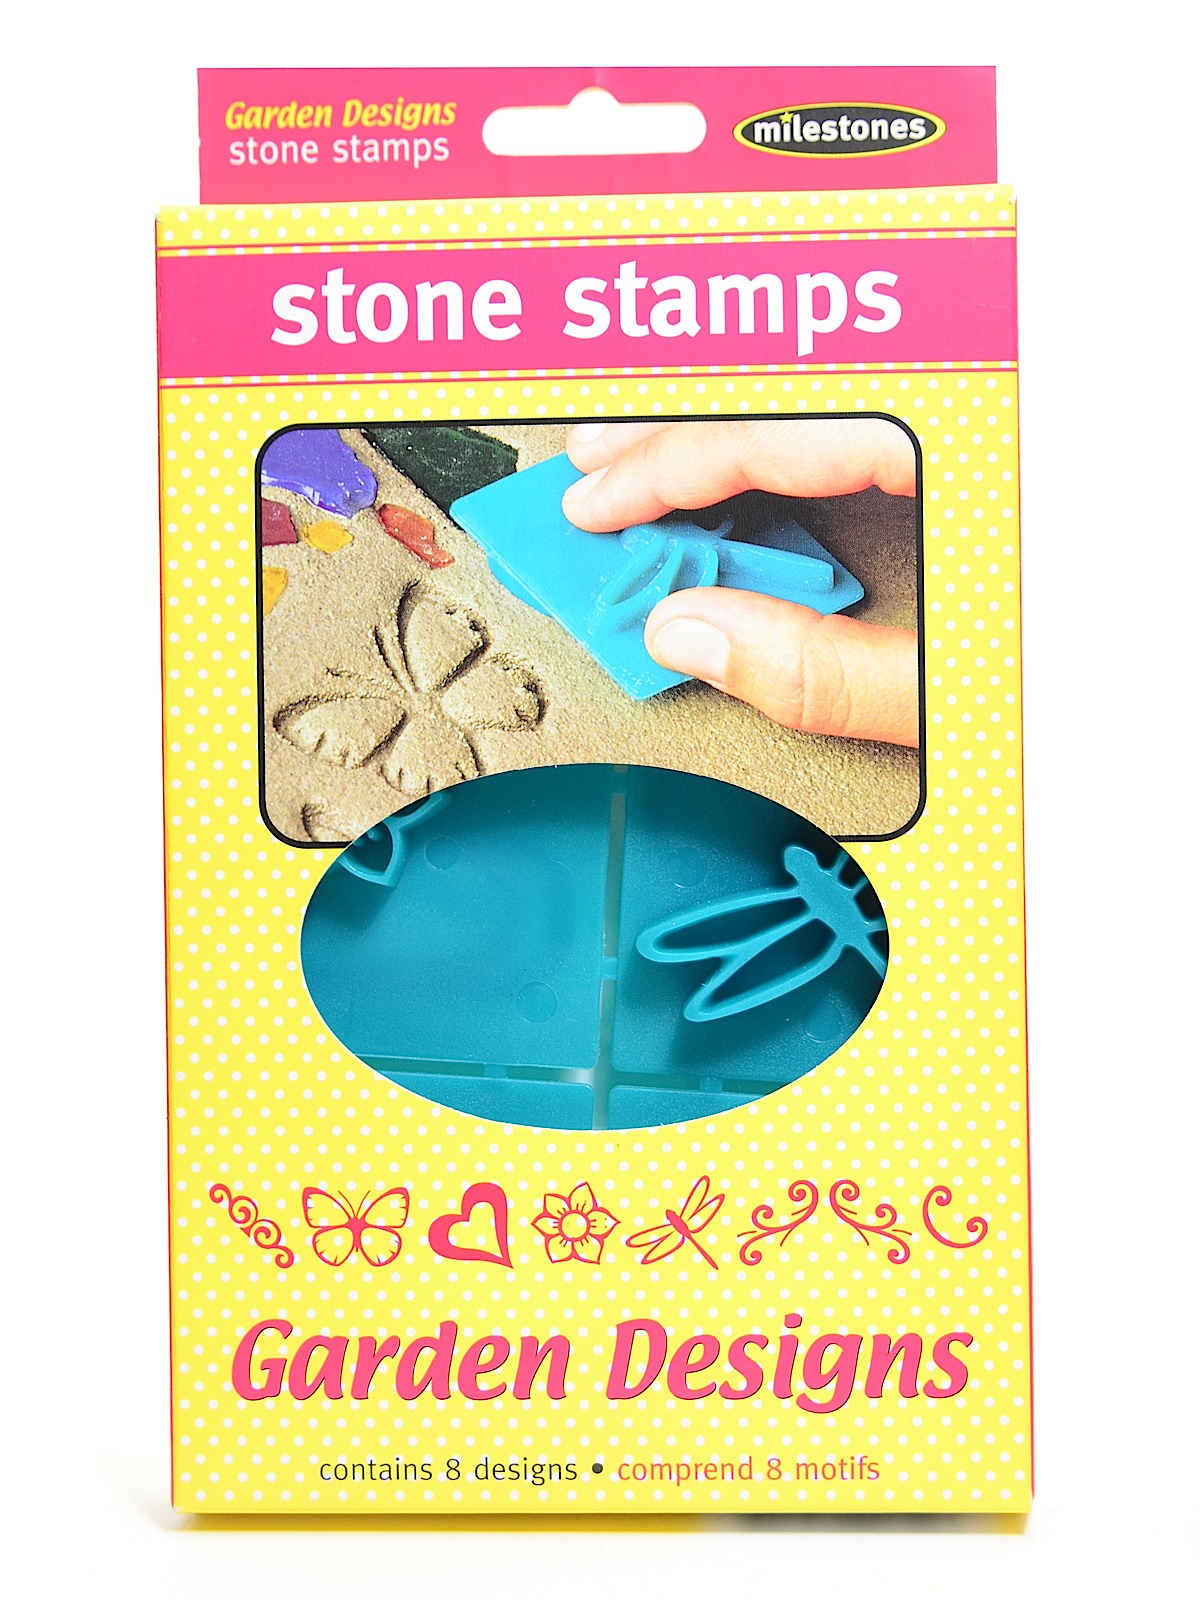 Stone Stamps Victorian Garden Designs